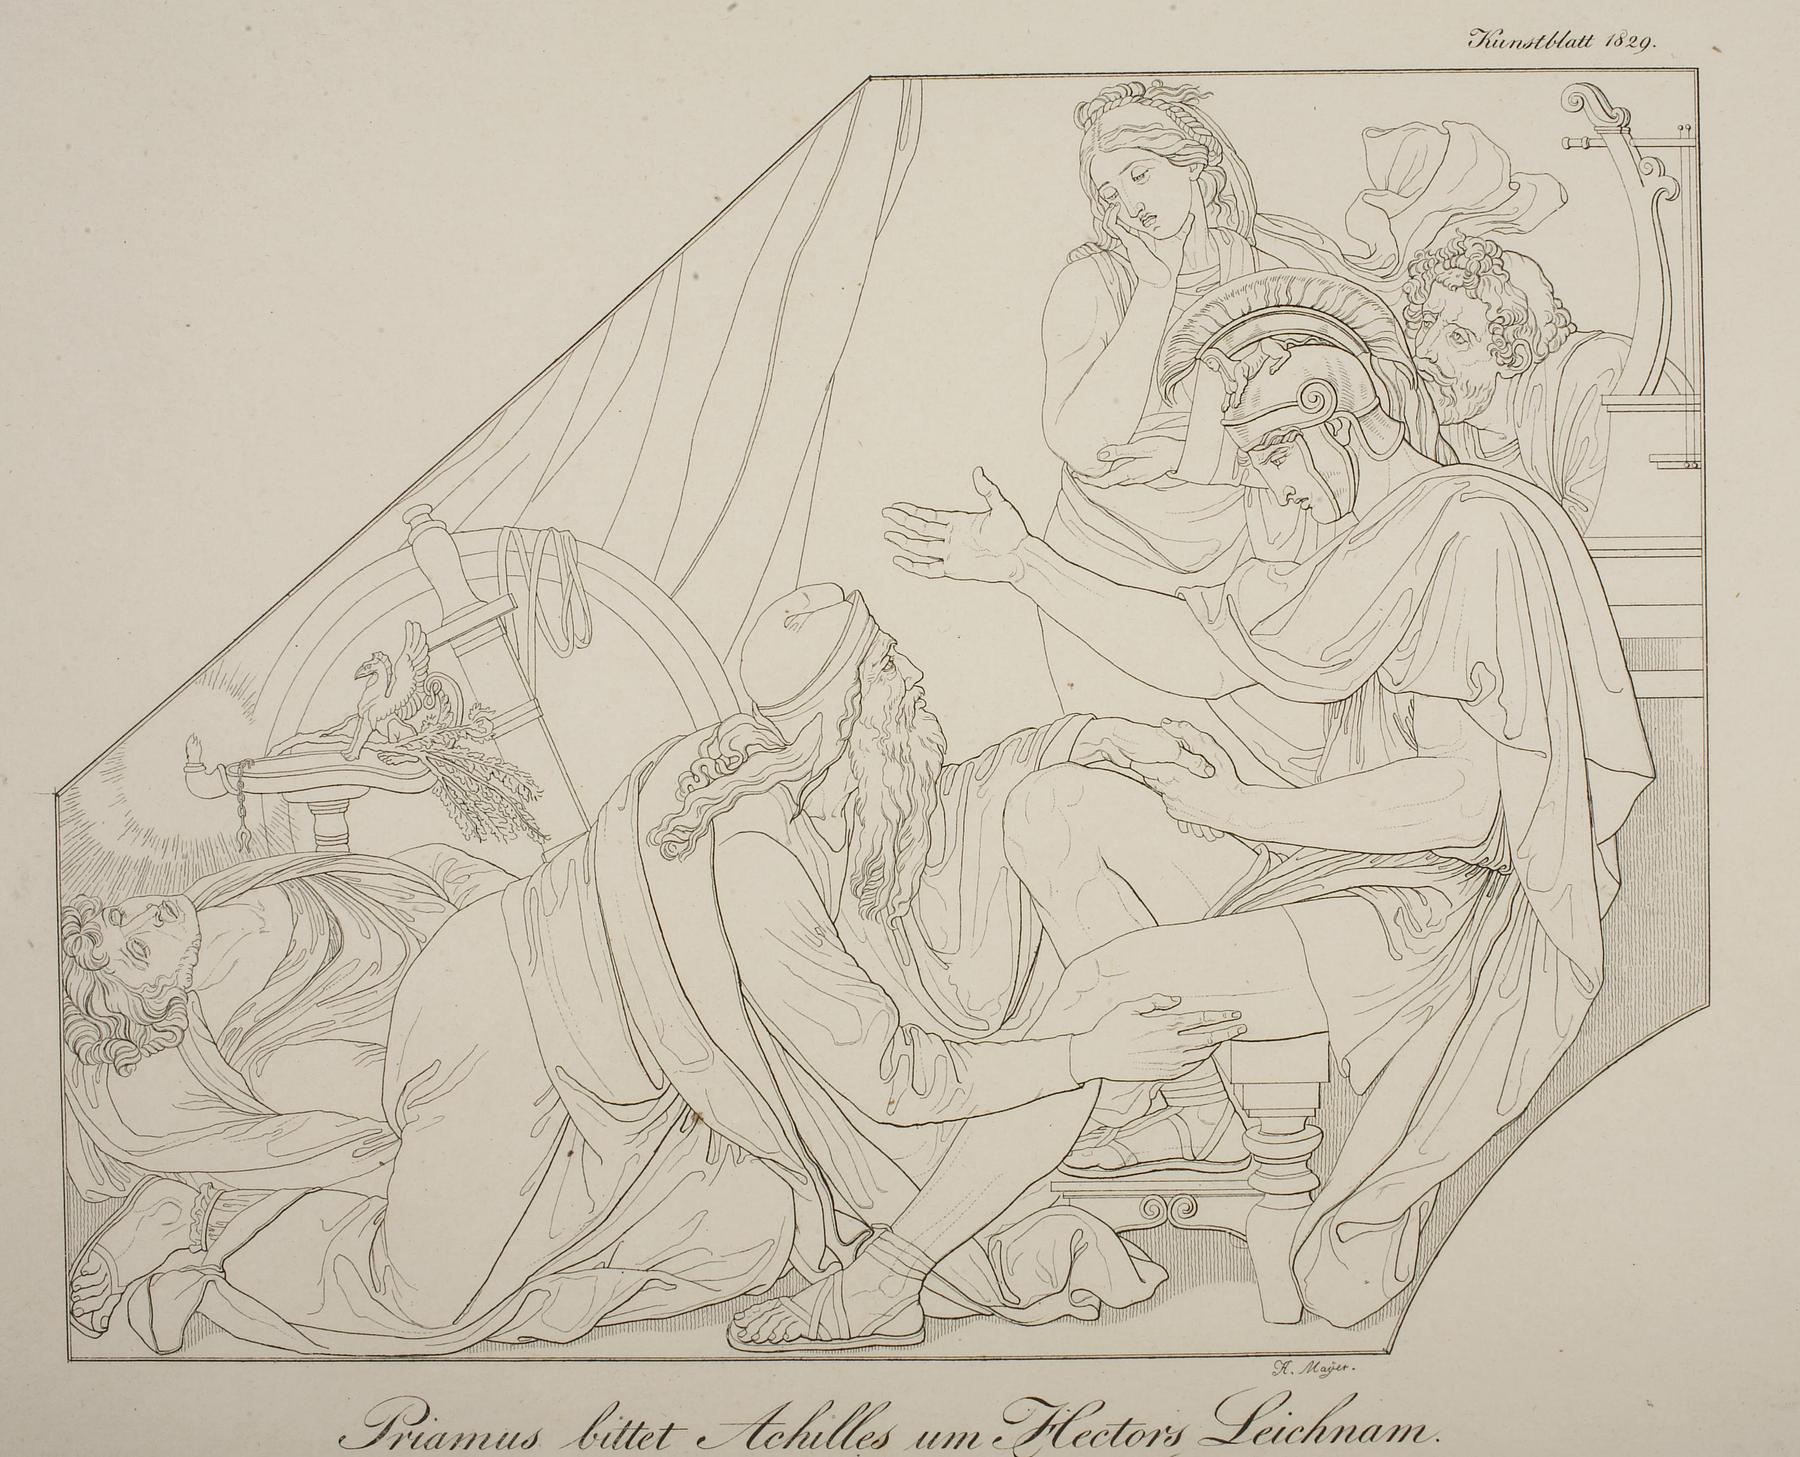 Priamos bønfalder Achilleus om Hectors lig, E1983